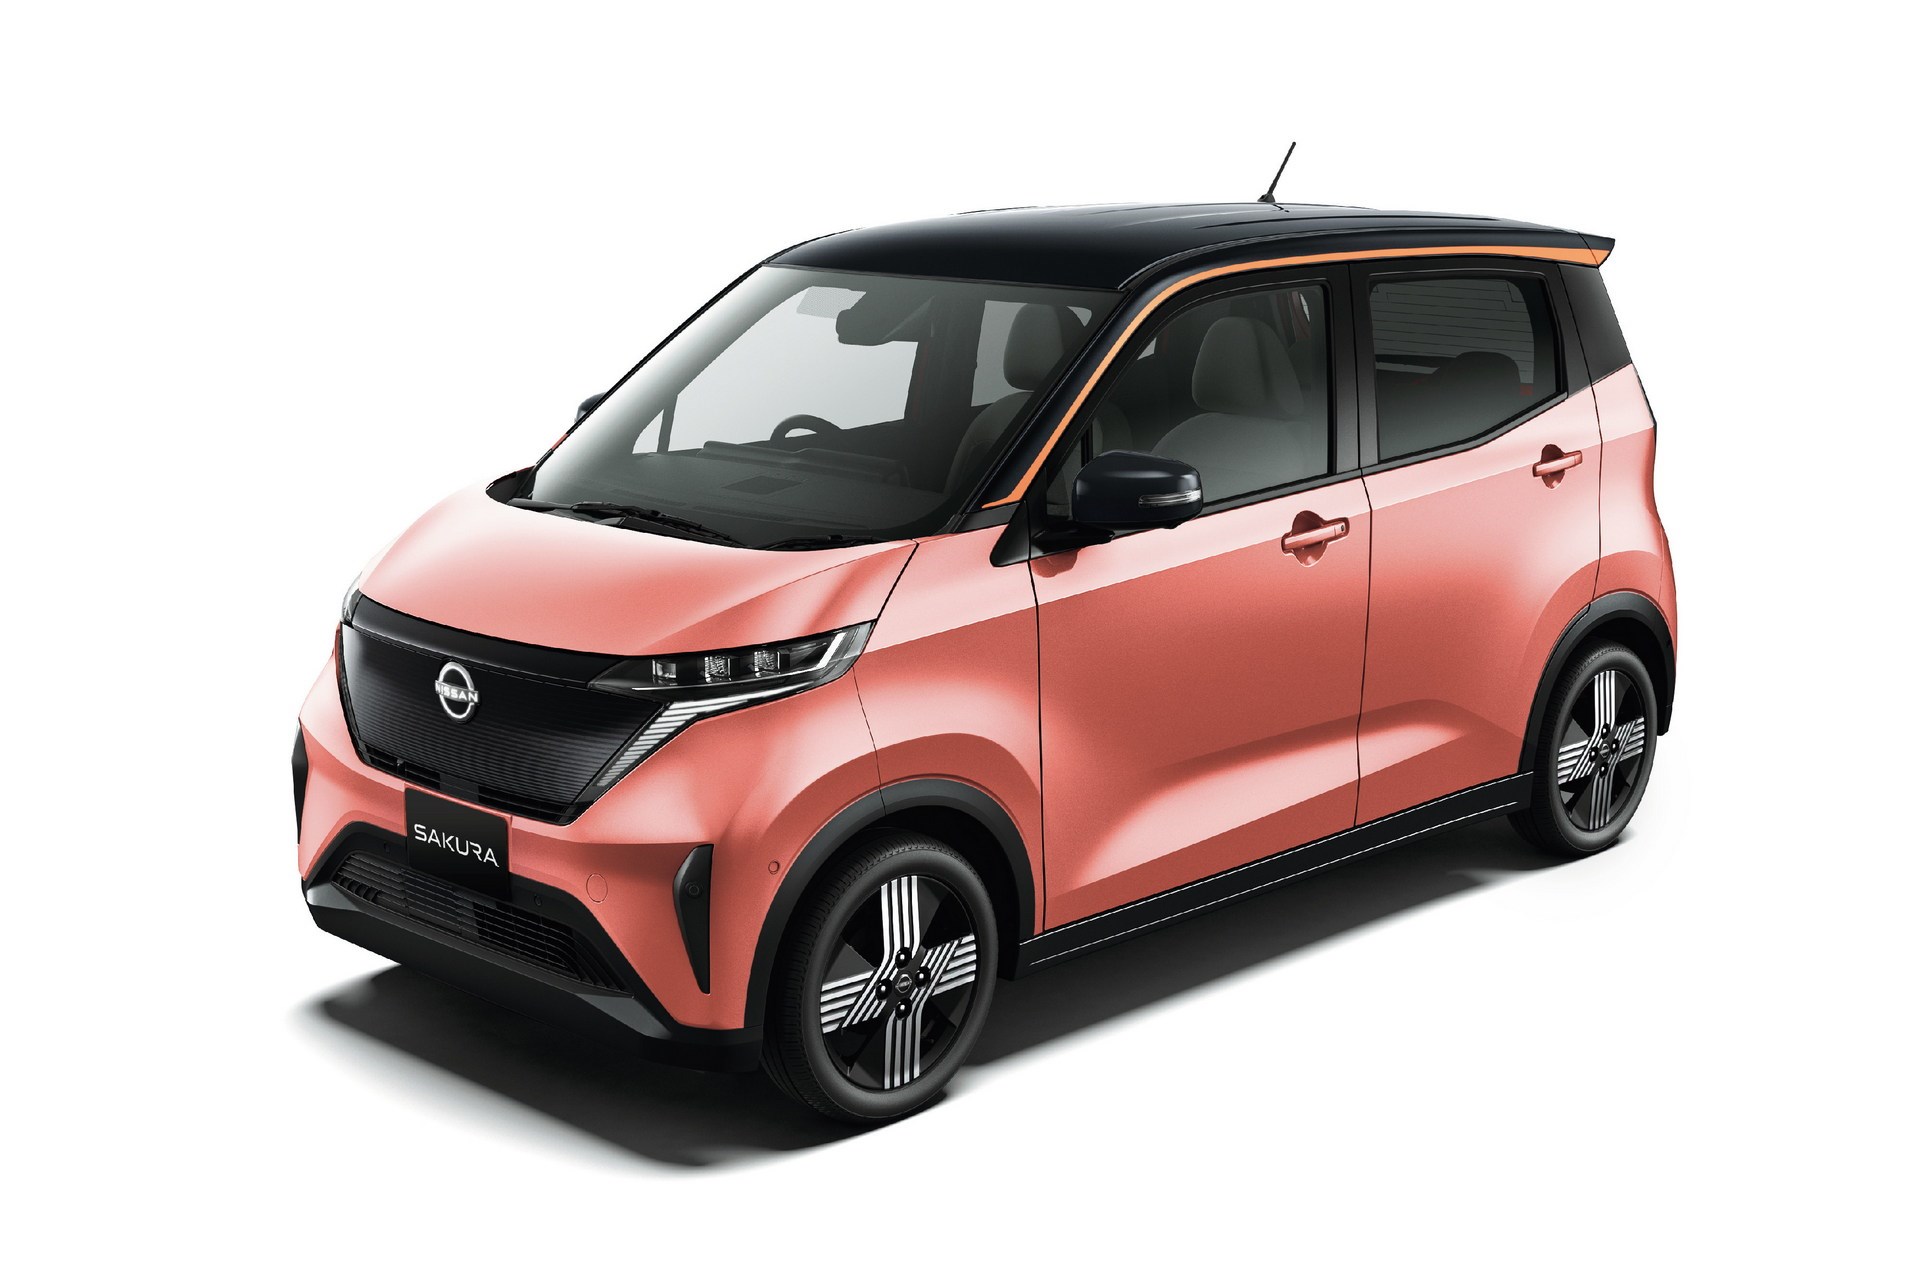 Elektrikli Nissan Sakura tanıtıldı: İşte tasarımı ve özellikleri